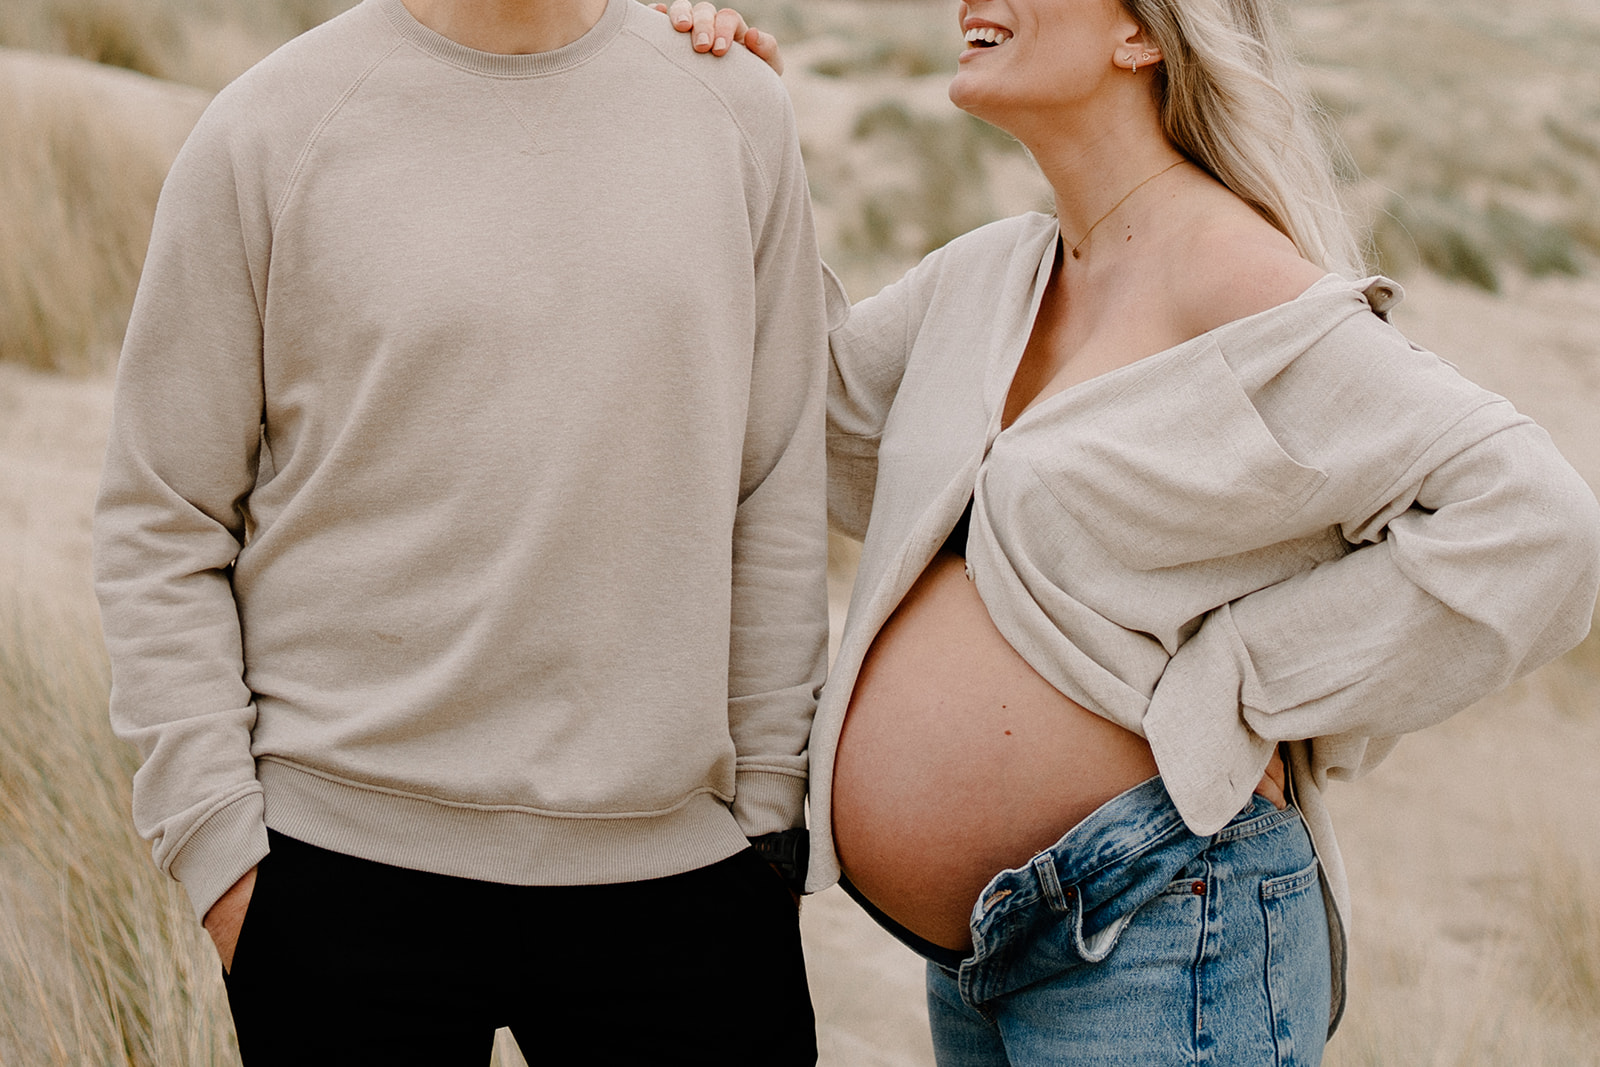 Zwangerschap fotoshoot op het strand in Zeeland